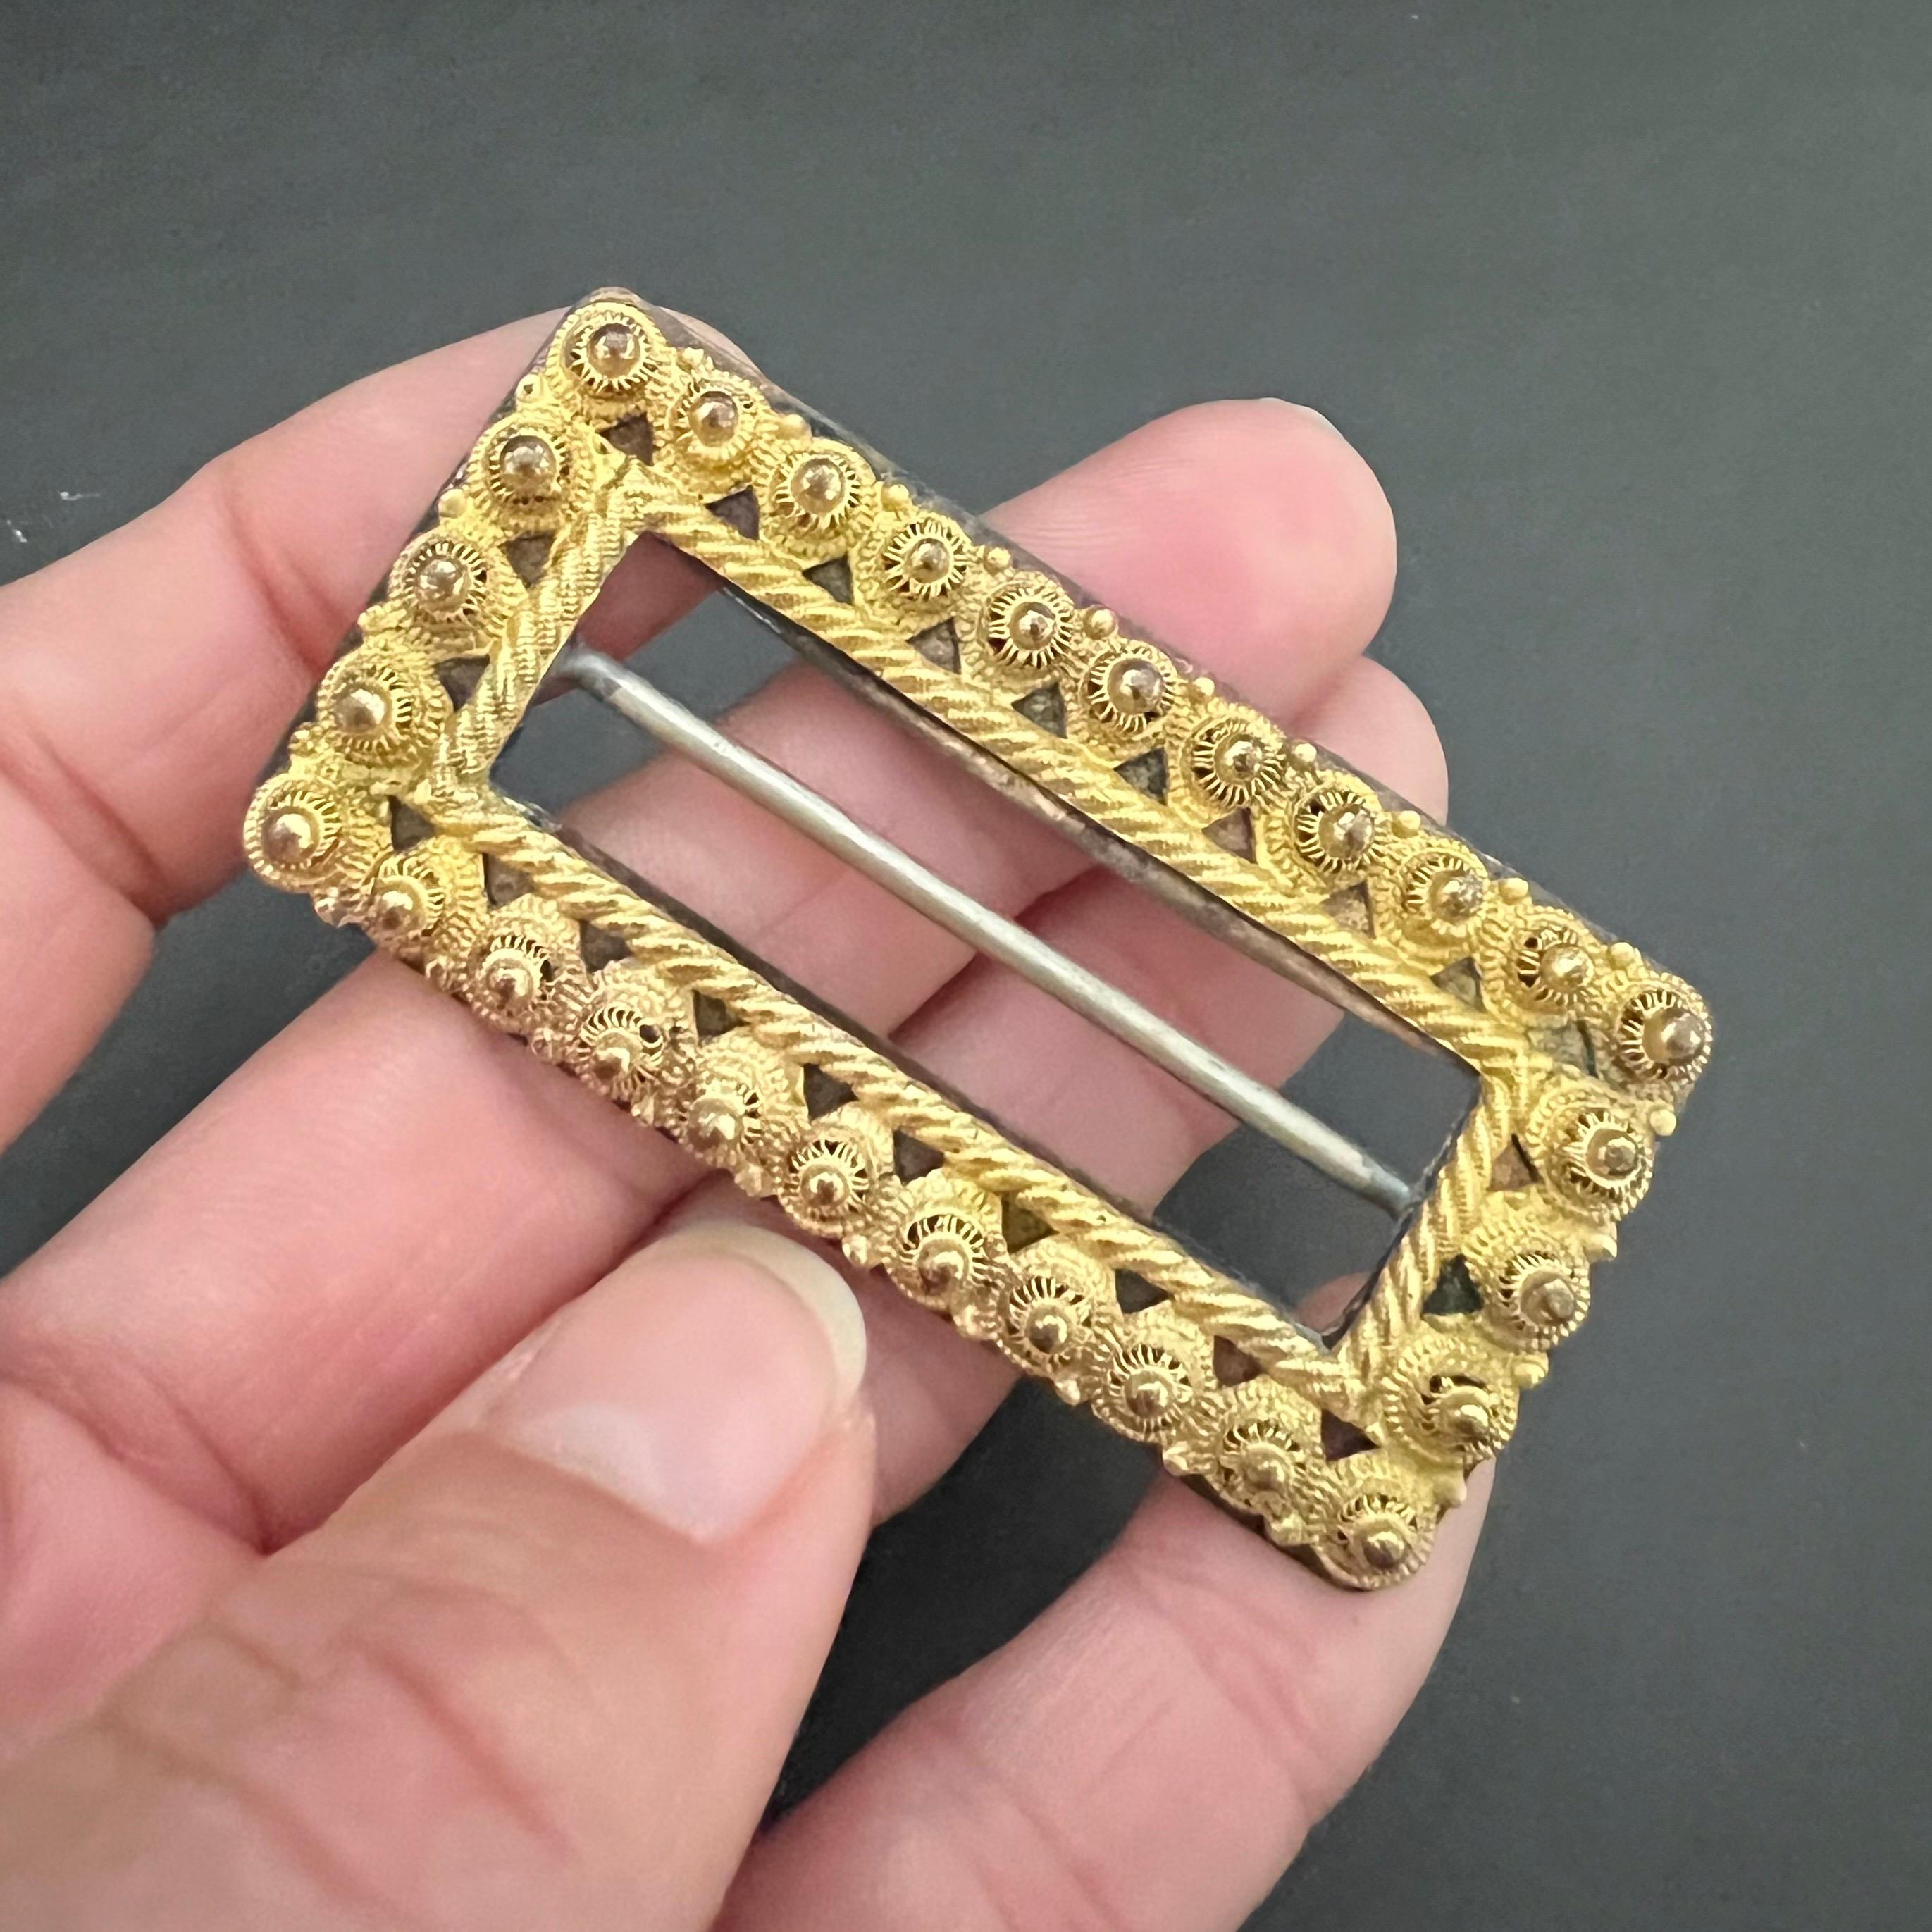 Cette boucle de ceinture antique en filigrane du XIXe siècle est en or jaune 10 carats. La boucle de forme rectangulaire est ornée de nœuds filigranes et d'un motif de corde. La partie supérieure de la boucle de ceinture est en or jaune 10 carats et